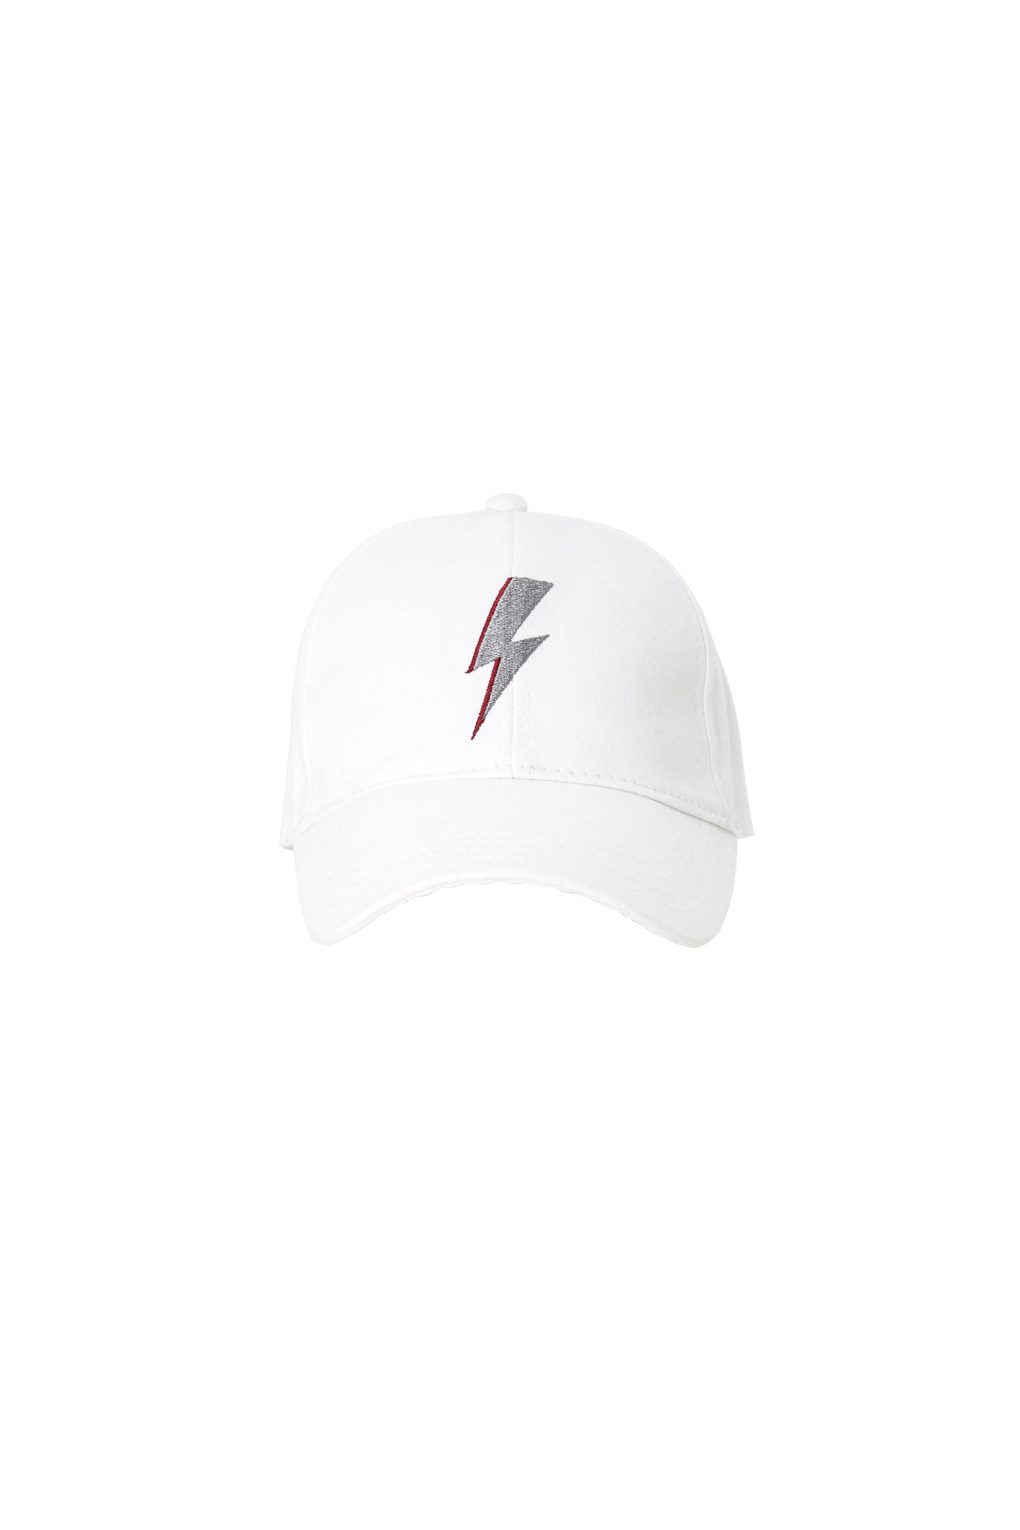 Thunder Şapka